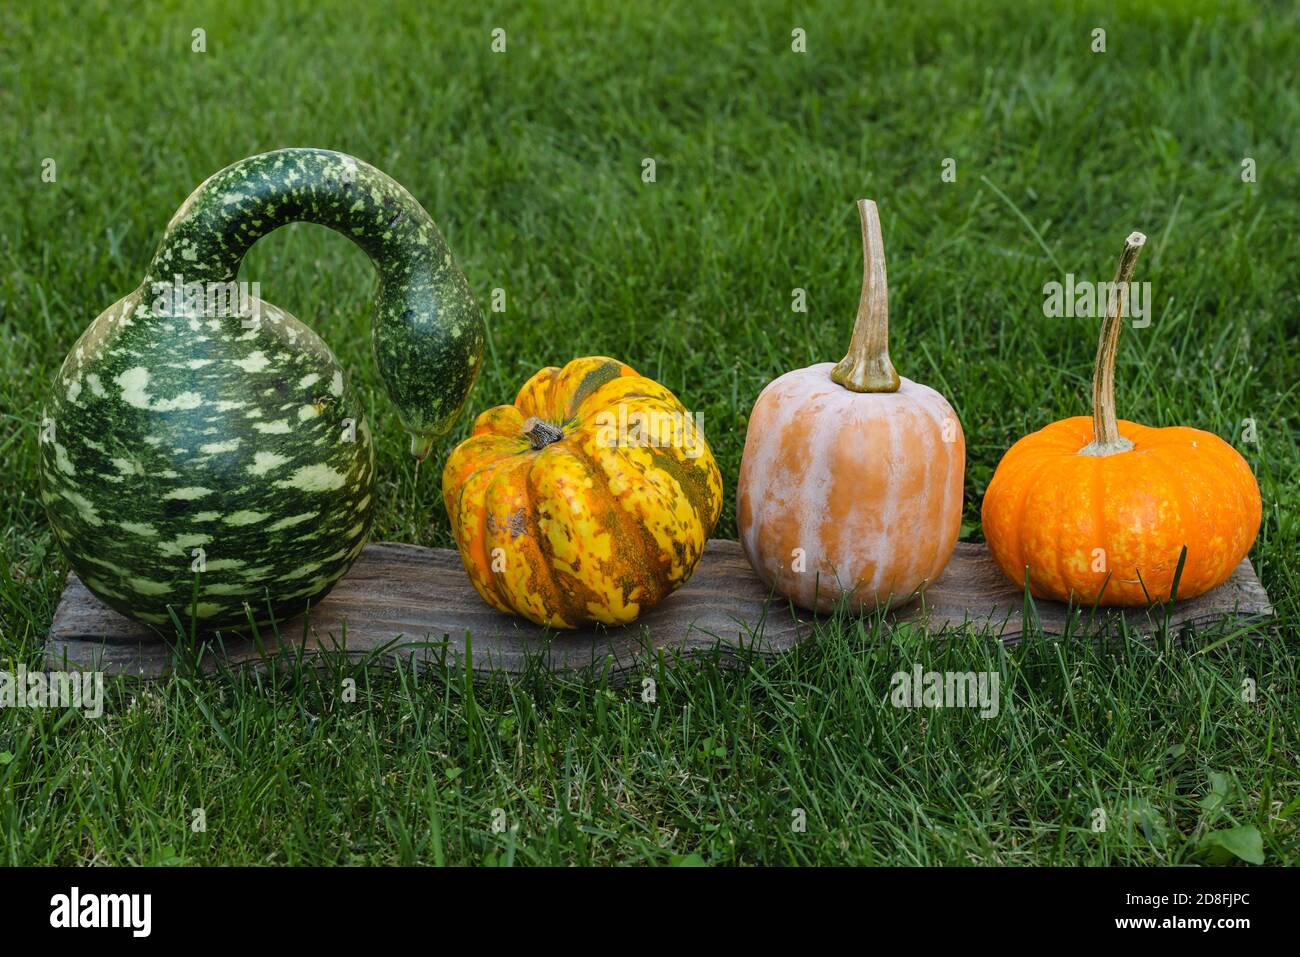 Kürbisse im Sortiment, gesprenkelte Schwan oder Korda Gourd und süße Bio-gelbe Kürbisse schließen sich auf dem Gras im Garten an Stockfoto